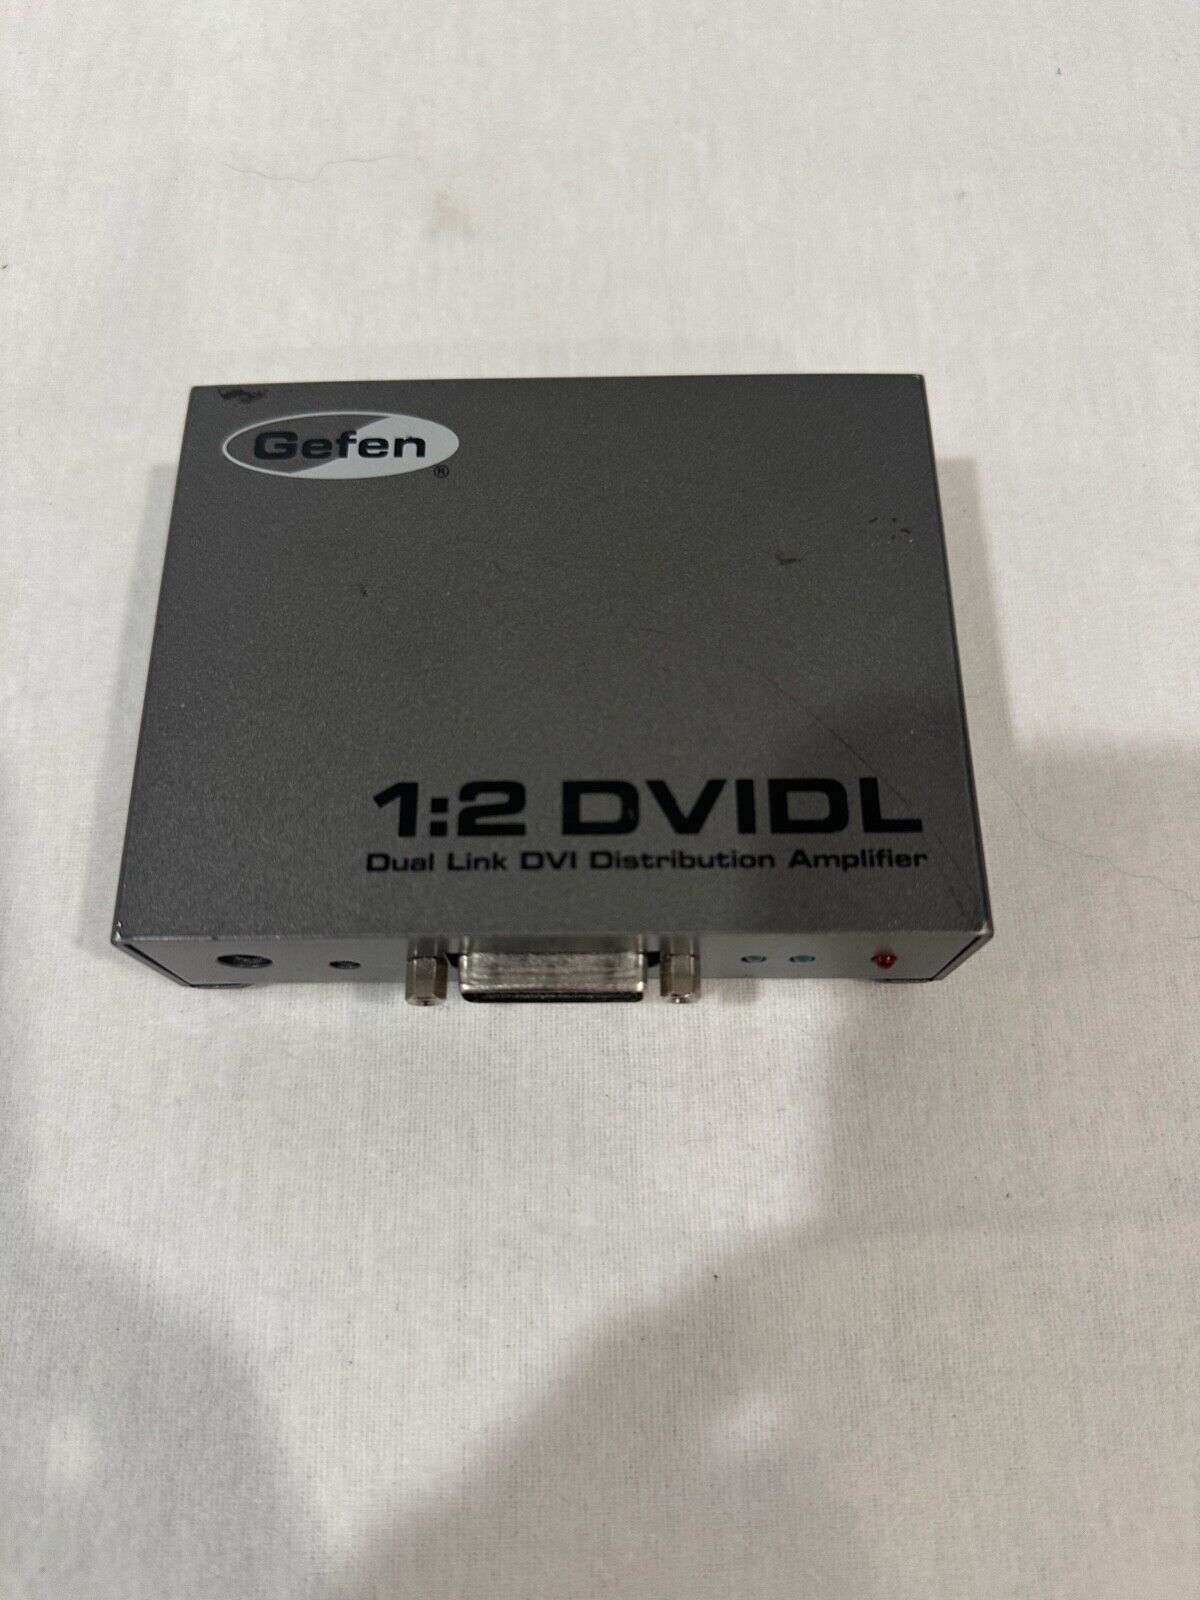 GEFEN EXT-DVI-142DL Dual Link Distribution Amplifier - 1:2 DVIDL